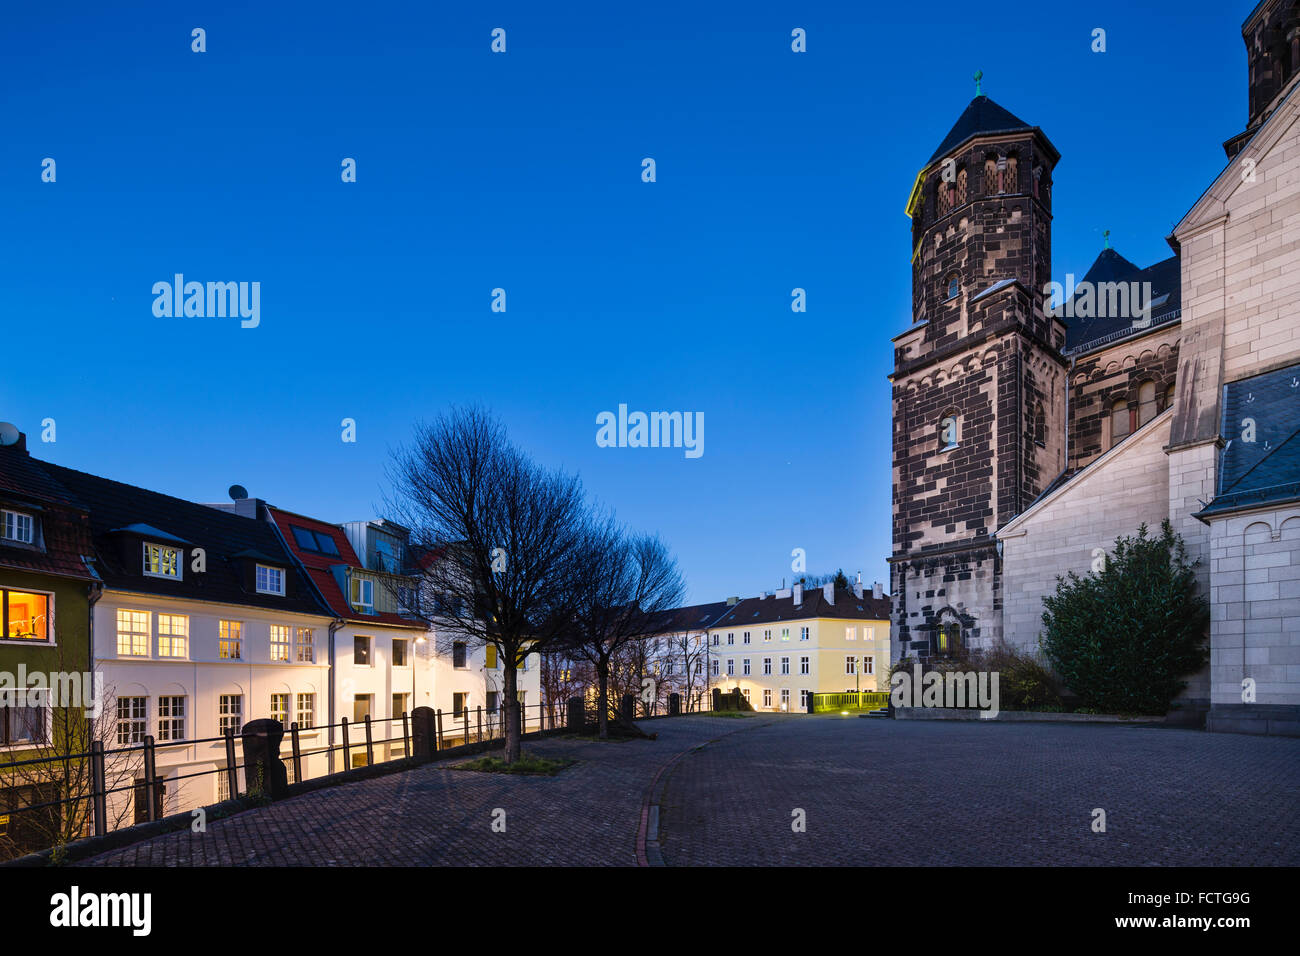 The catholic Herz-Jesu church in Aachen Burtscheid, Germany with night blue sky. Stock Photo